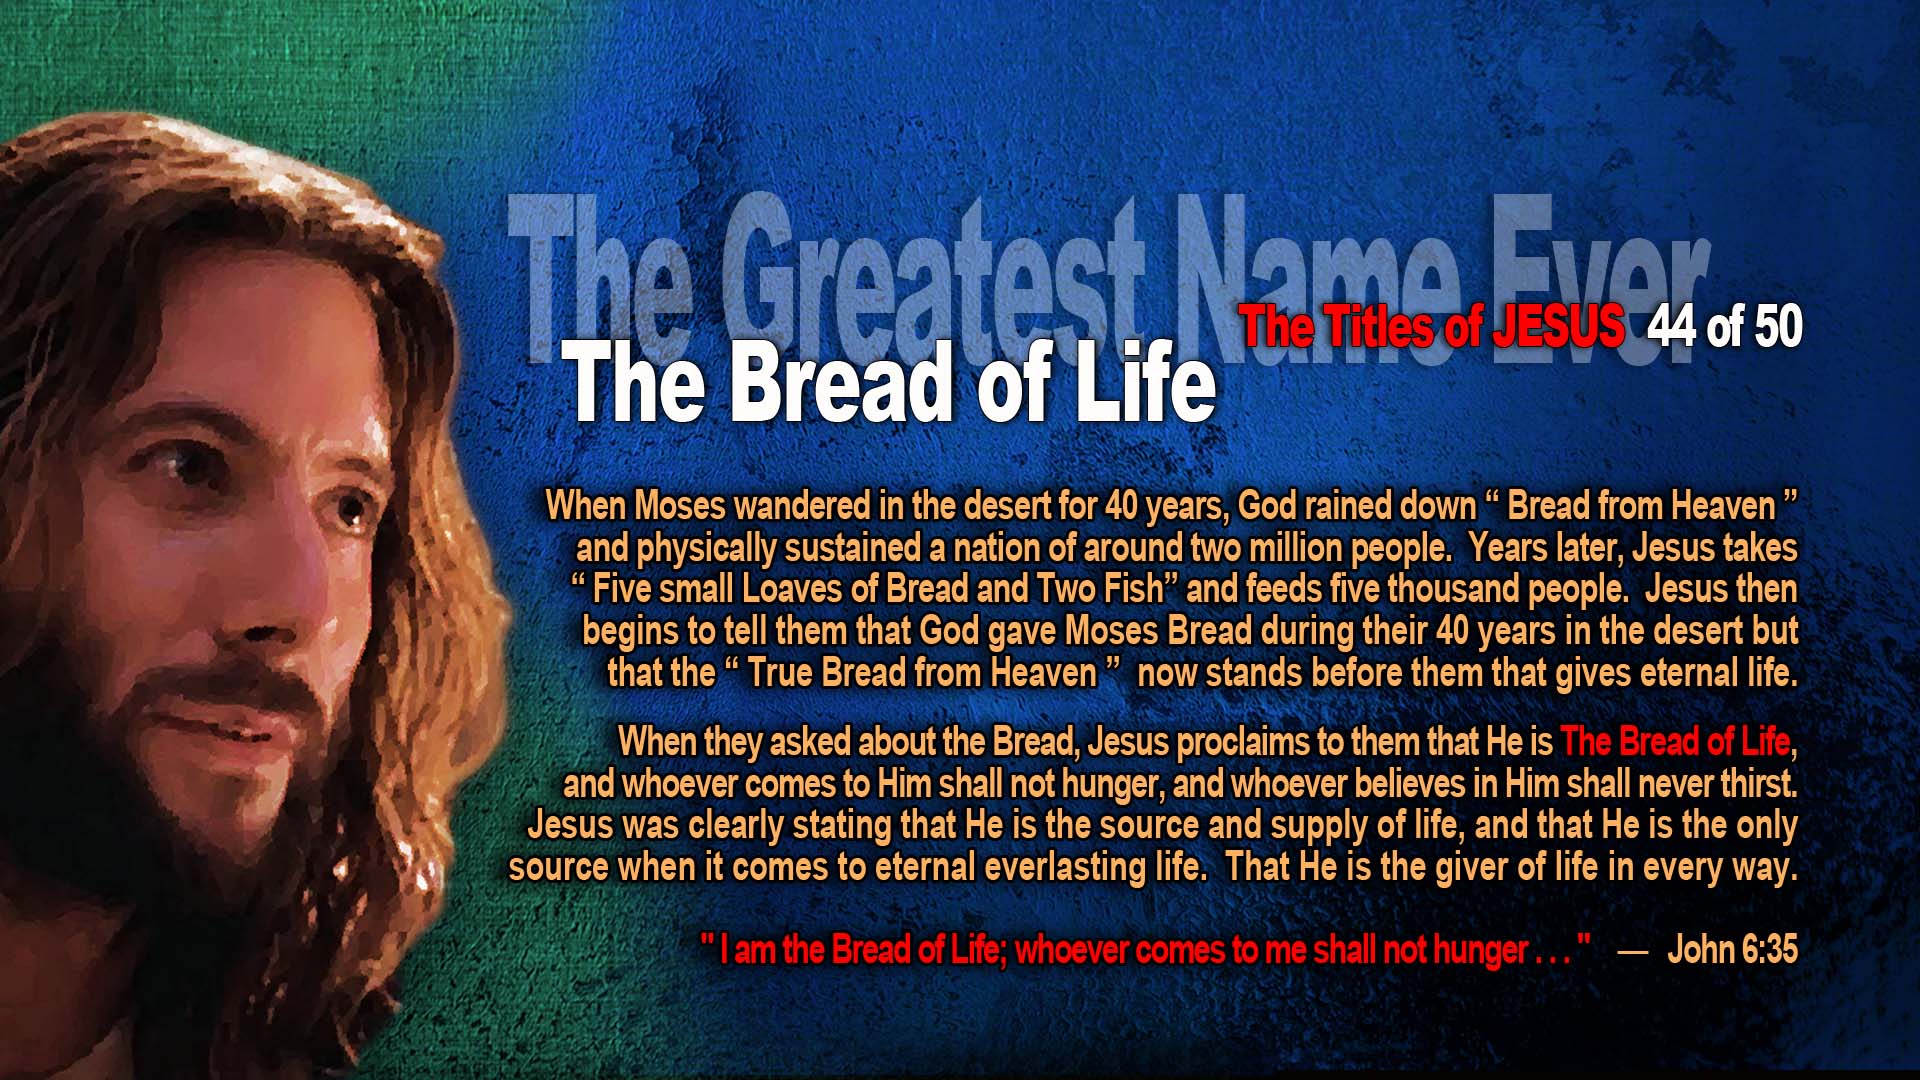 44 GreatestName Bread